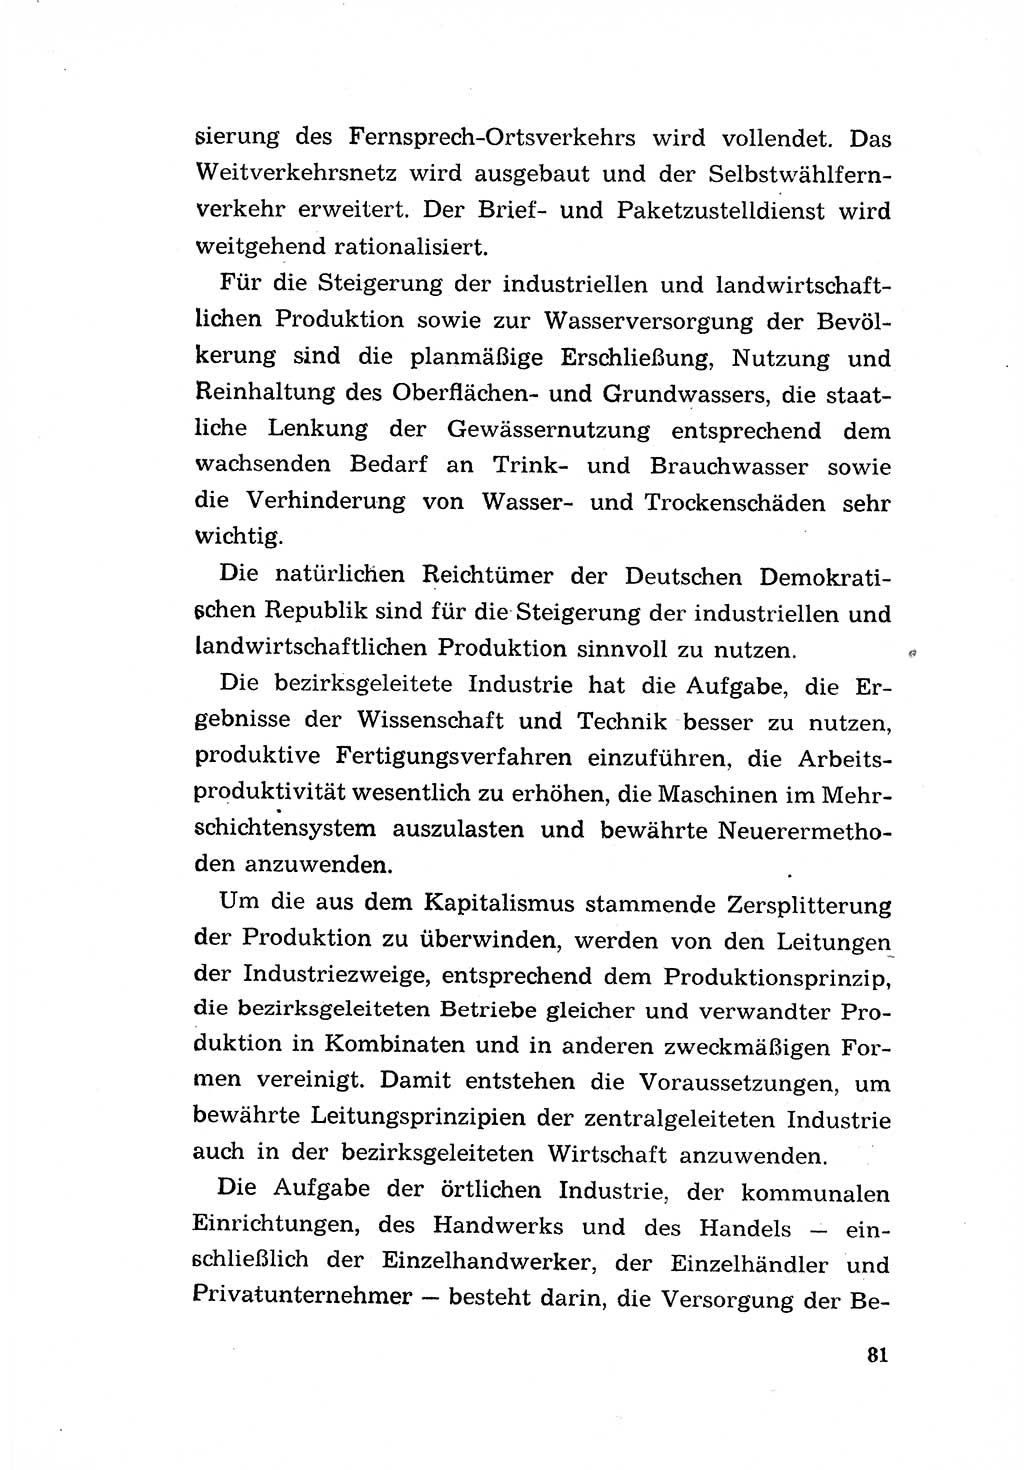 Programm der Sozialistischen Einheitspartei Deutschlands (SED) [Deutsche Demokratische Republik (DDR)] 1963, Seite 81 (Progr. SED DDR 1963, S. 81)